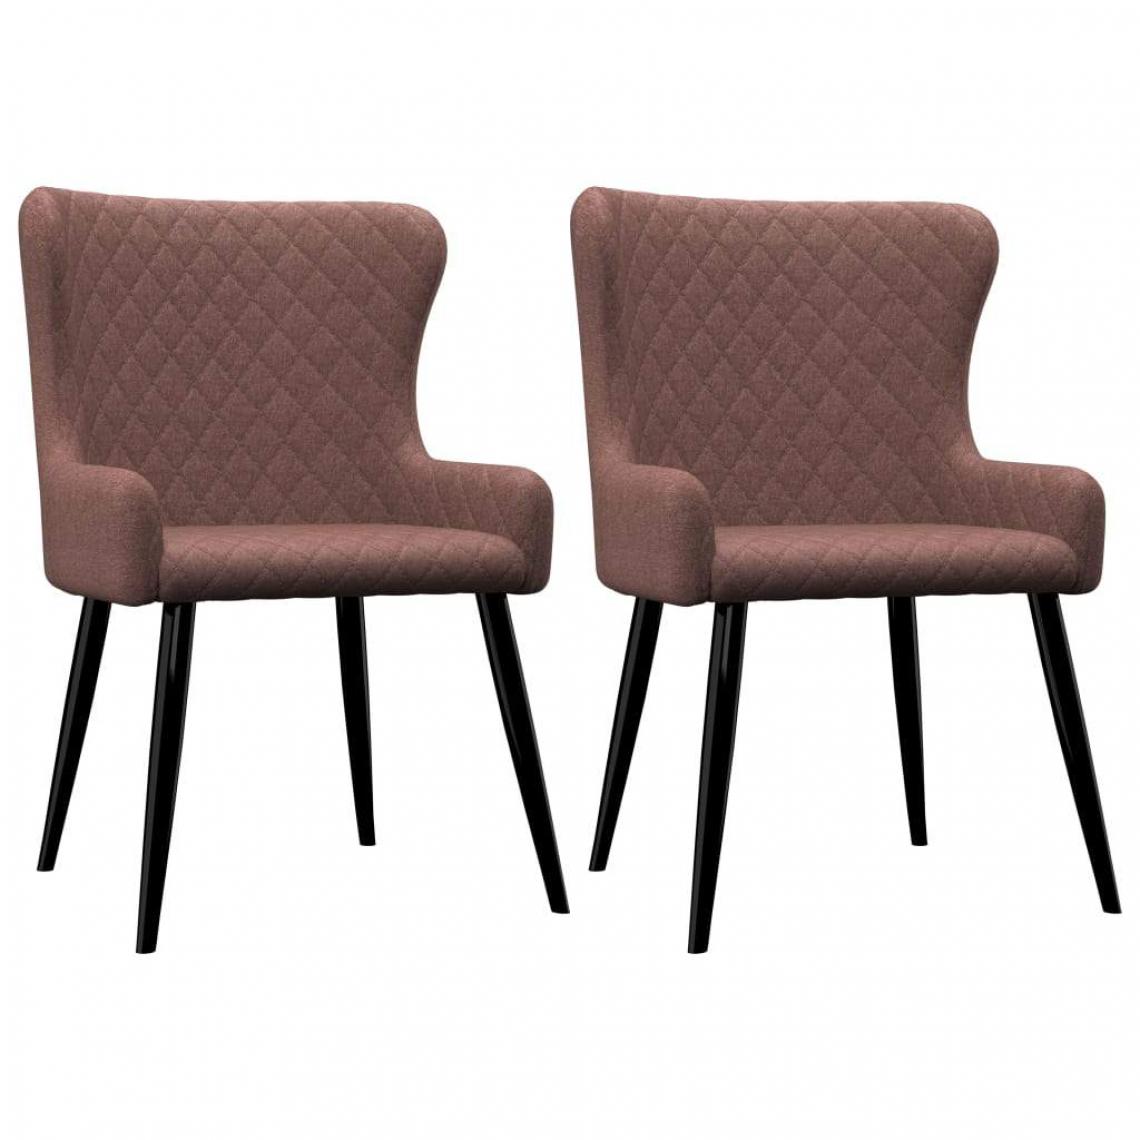 Decoshop26 - Lot de 2 chaises de salle à manger cuisine design classique tissu marron CDS020765 - Chaises